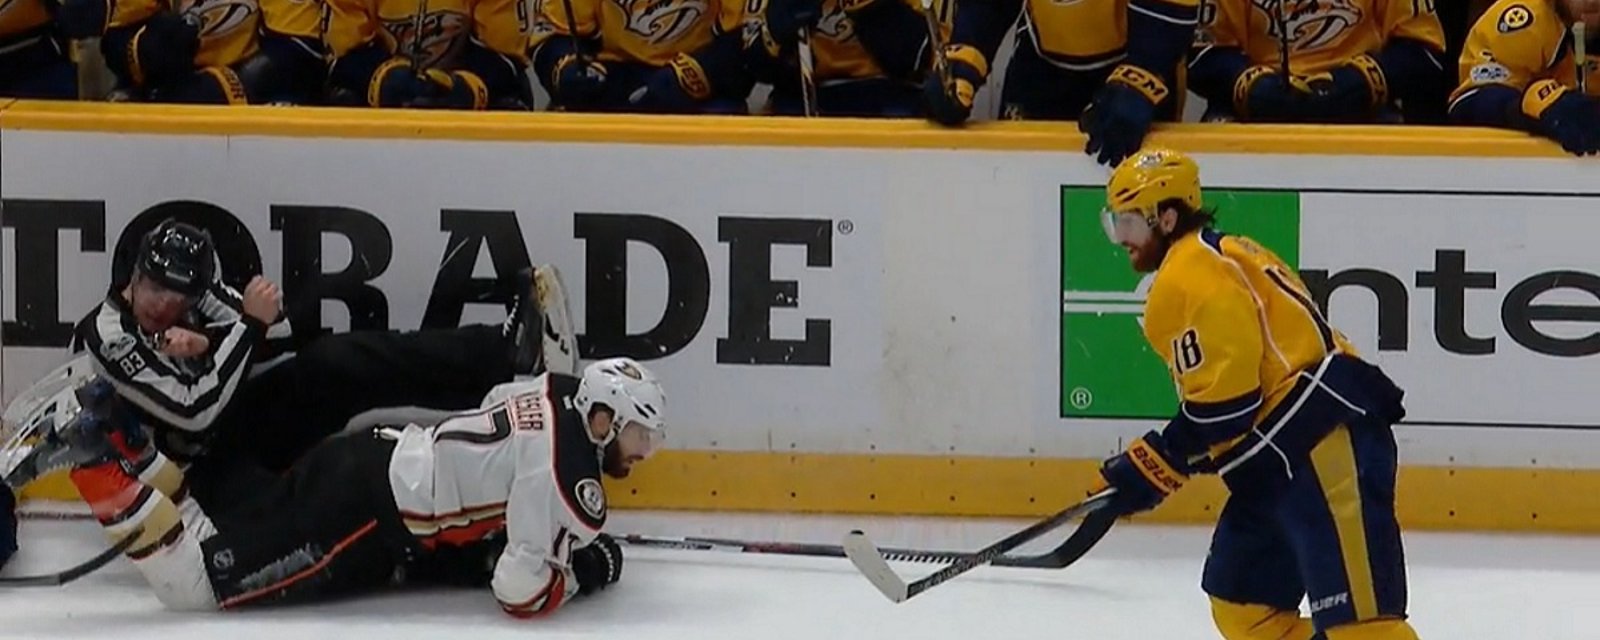 NHL official gets run over after big hit on Ryan Kesler.